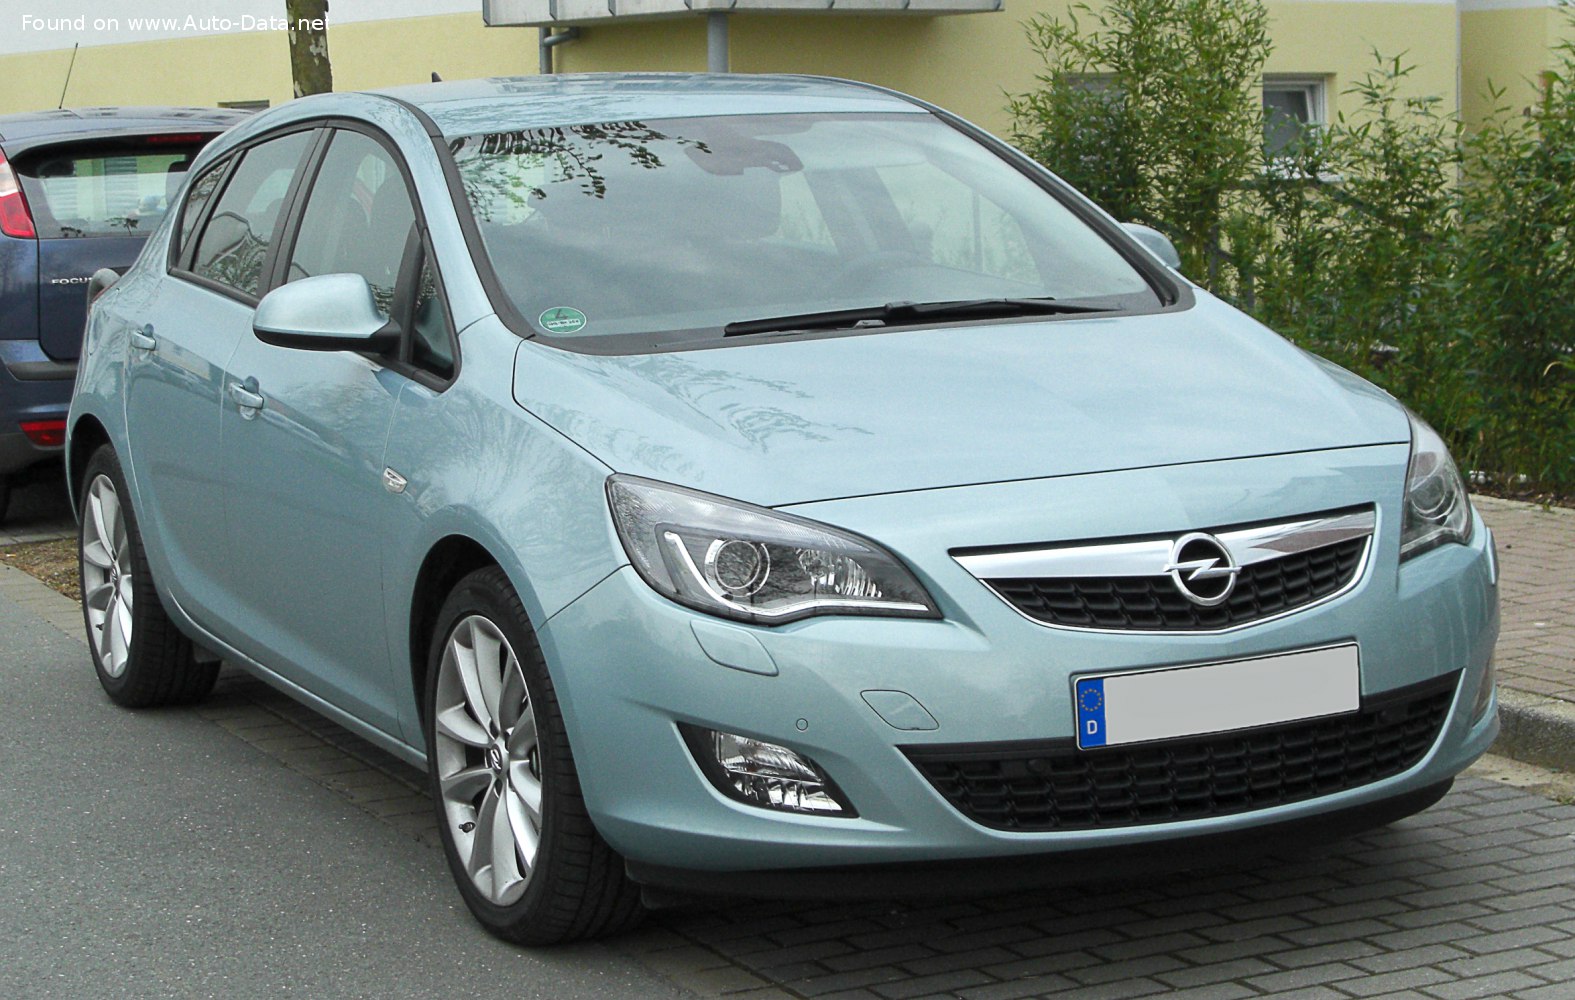 2009 Opel Astra J 1.7 CDTI (110 CV)